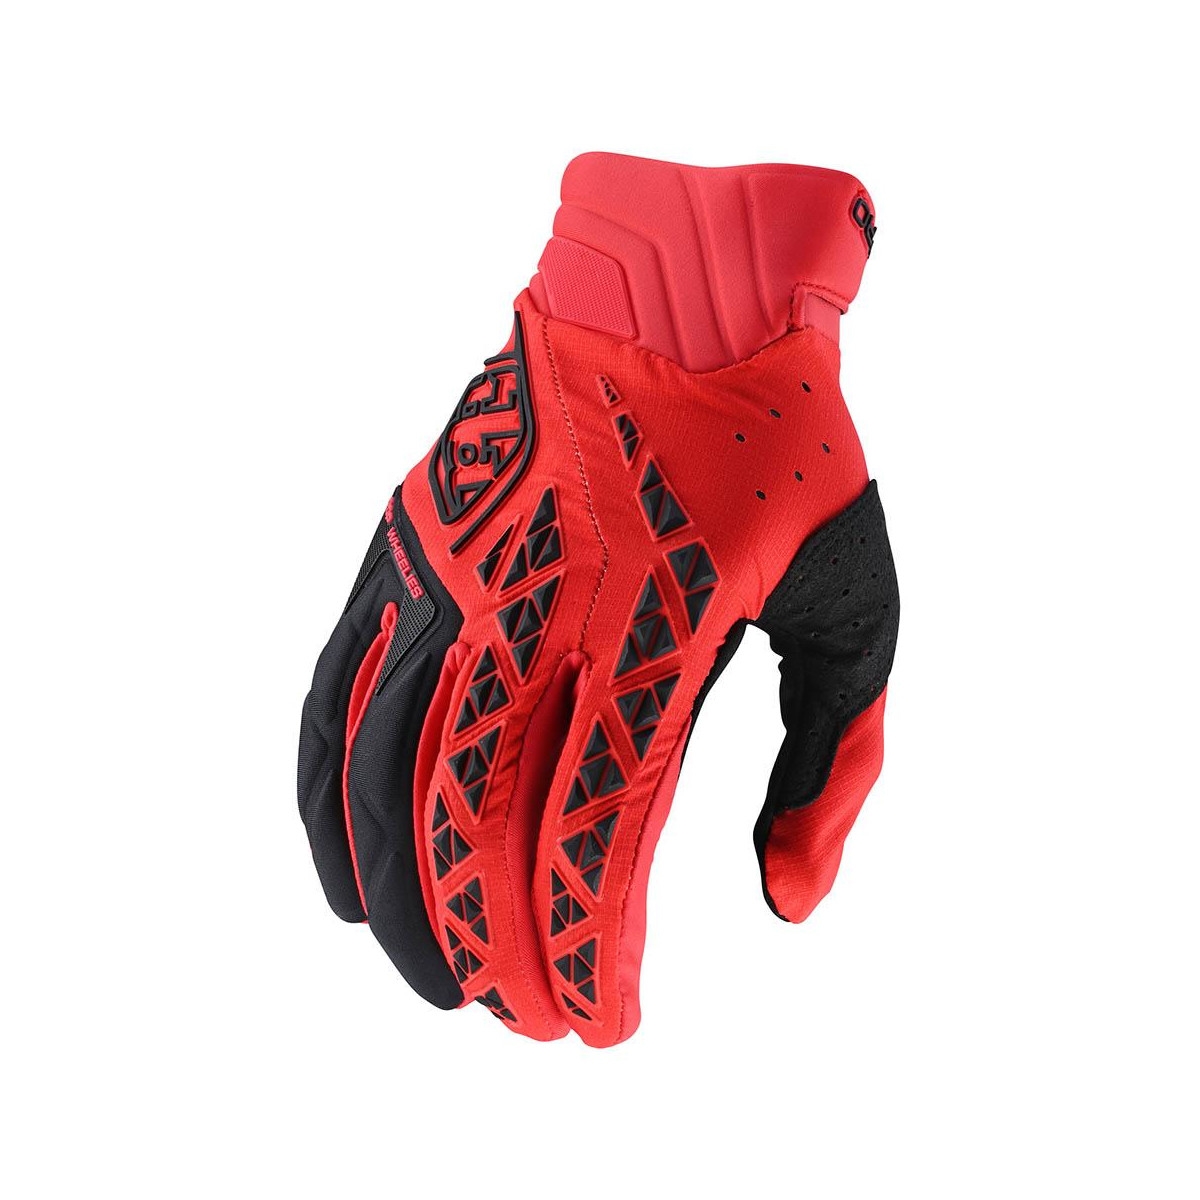 Gloves SE Pro Black/Red Size XL